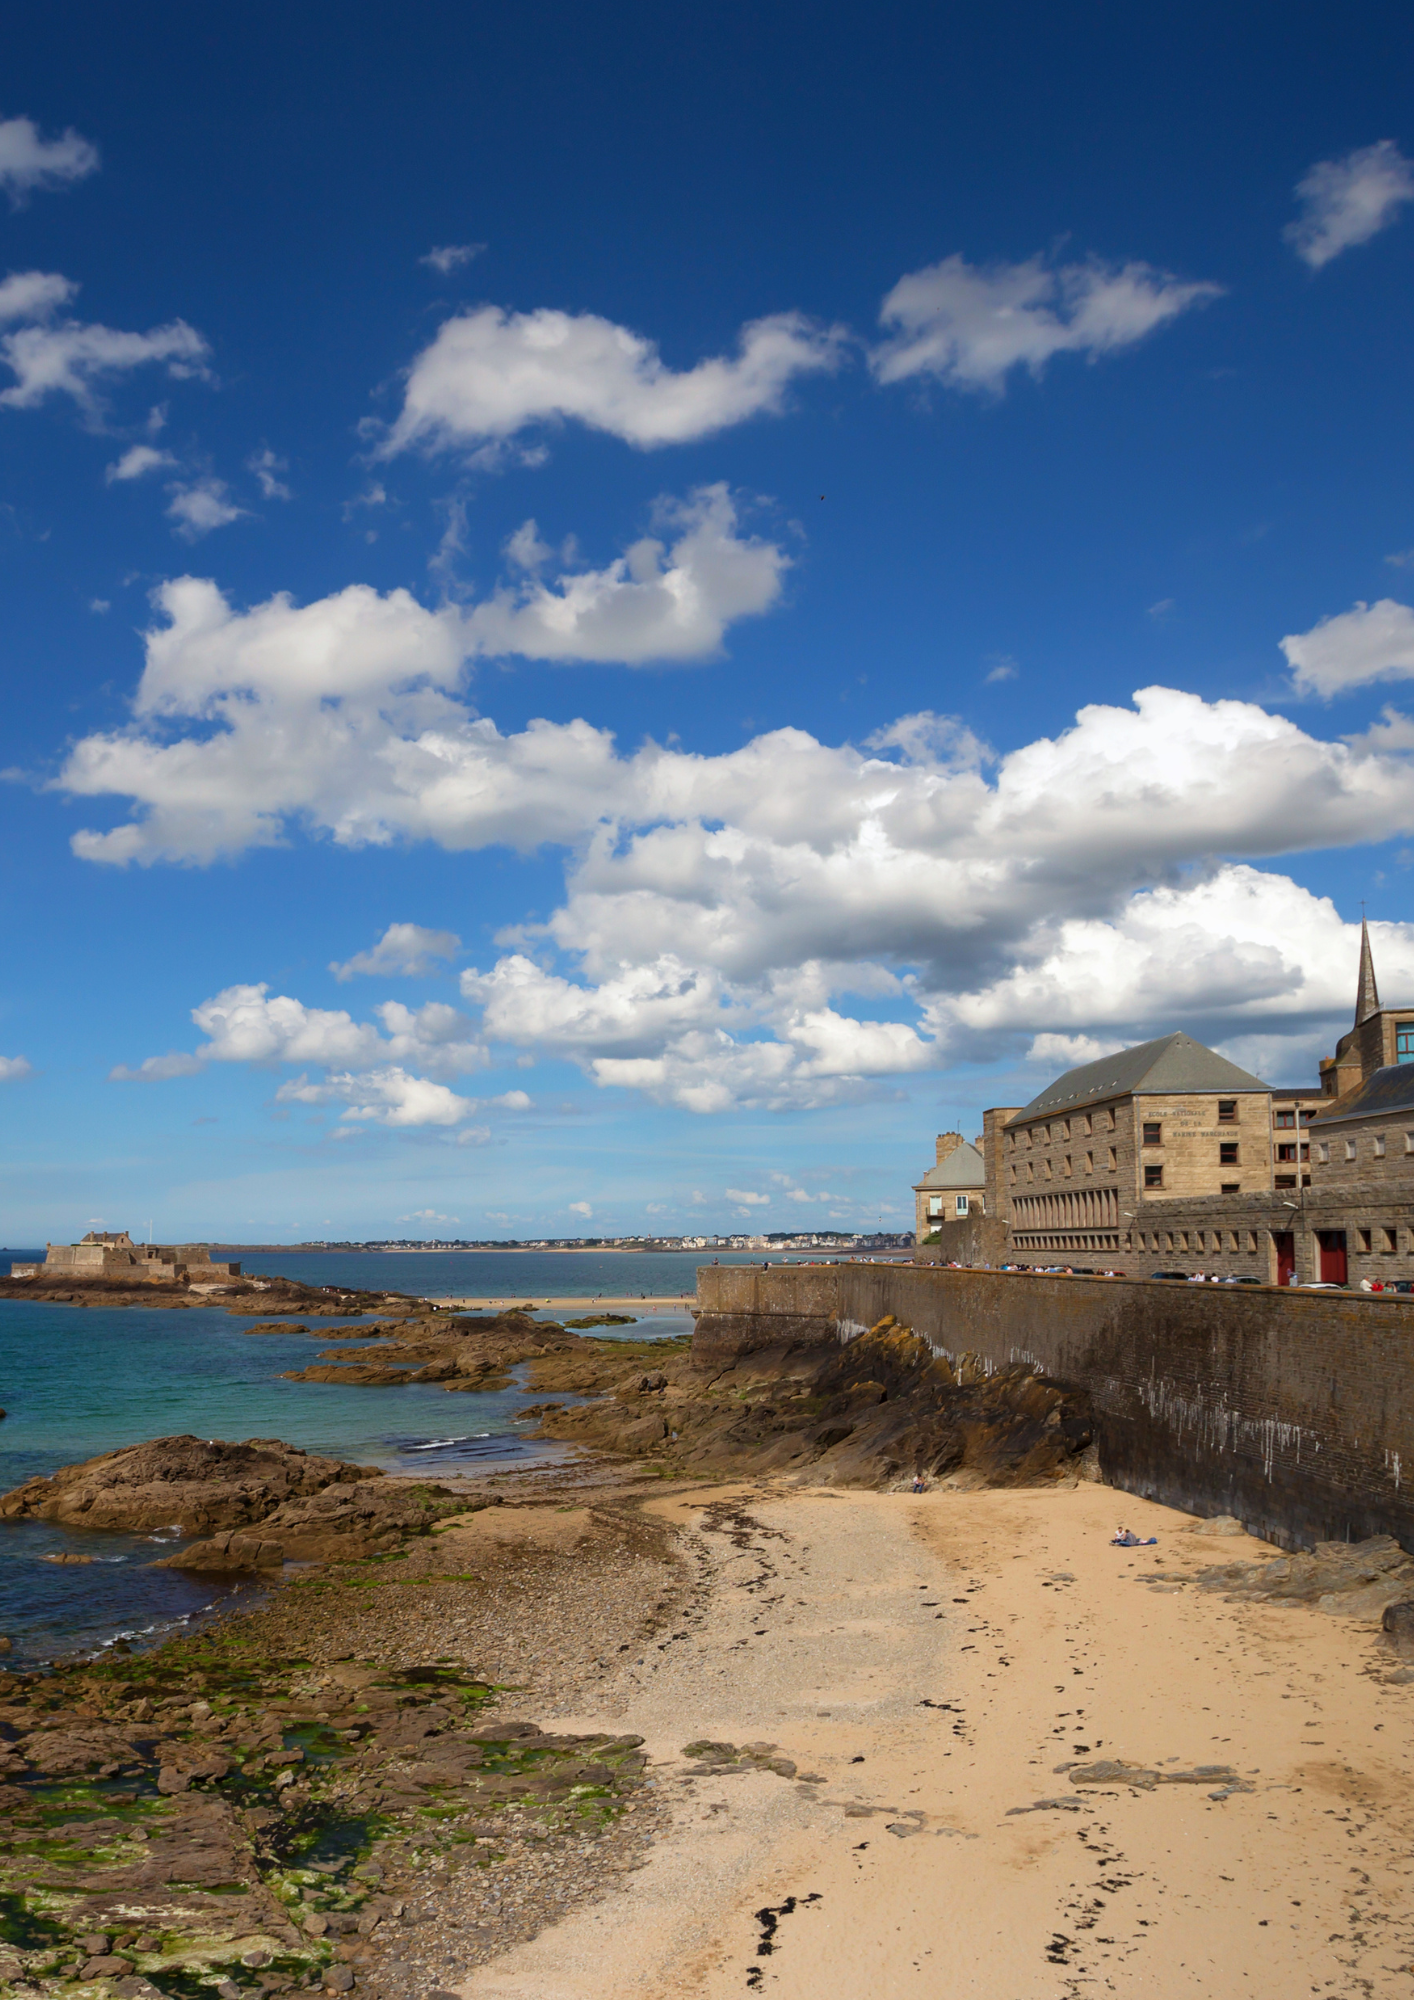 Location de vacances à Saint Malo